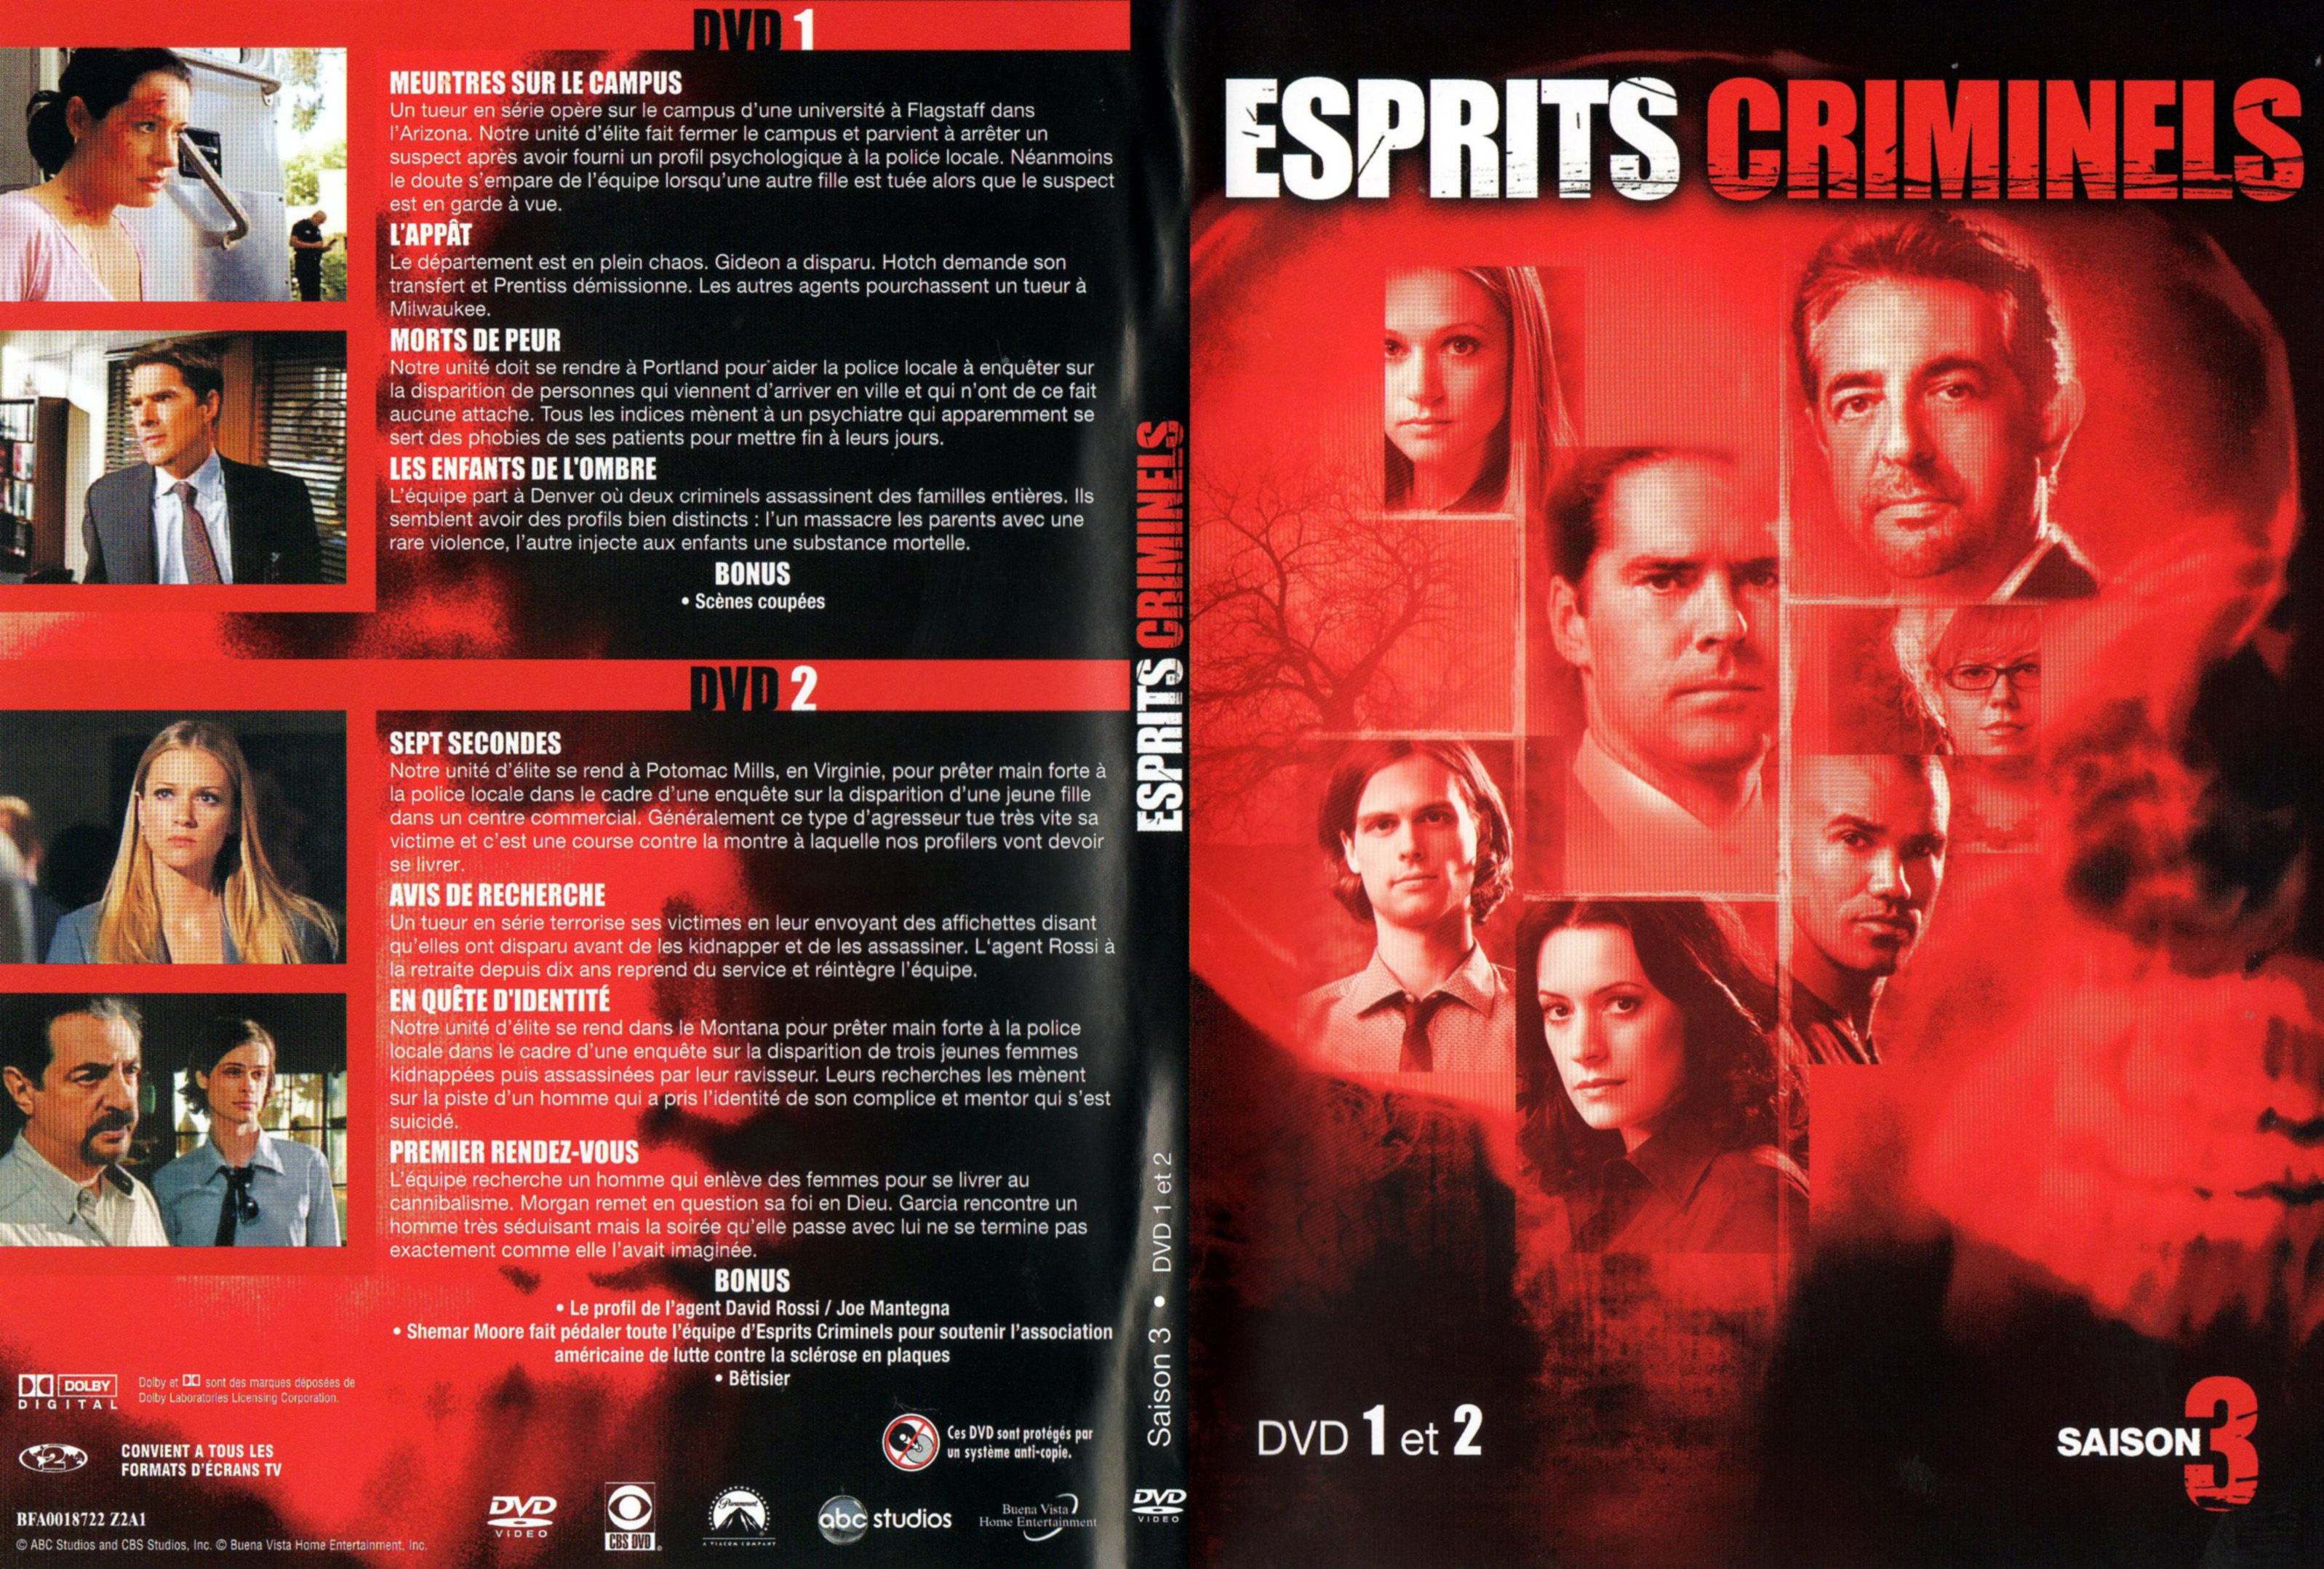 Jaquette DVD Esprits criminels Saison 3 DVD 1